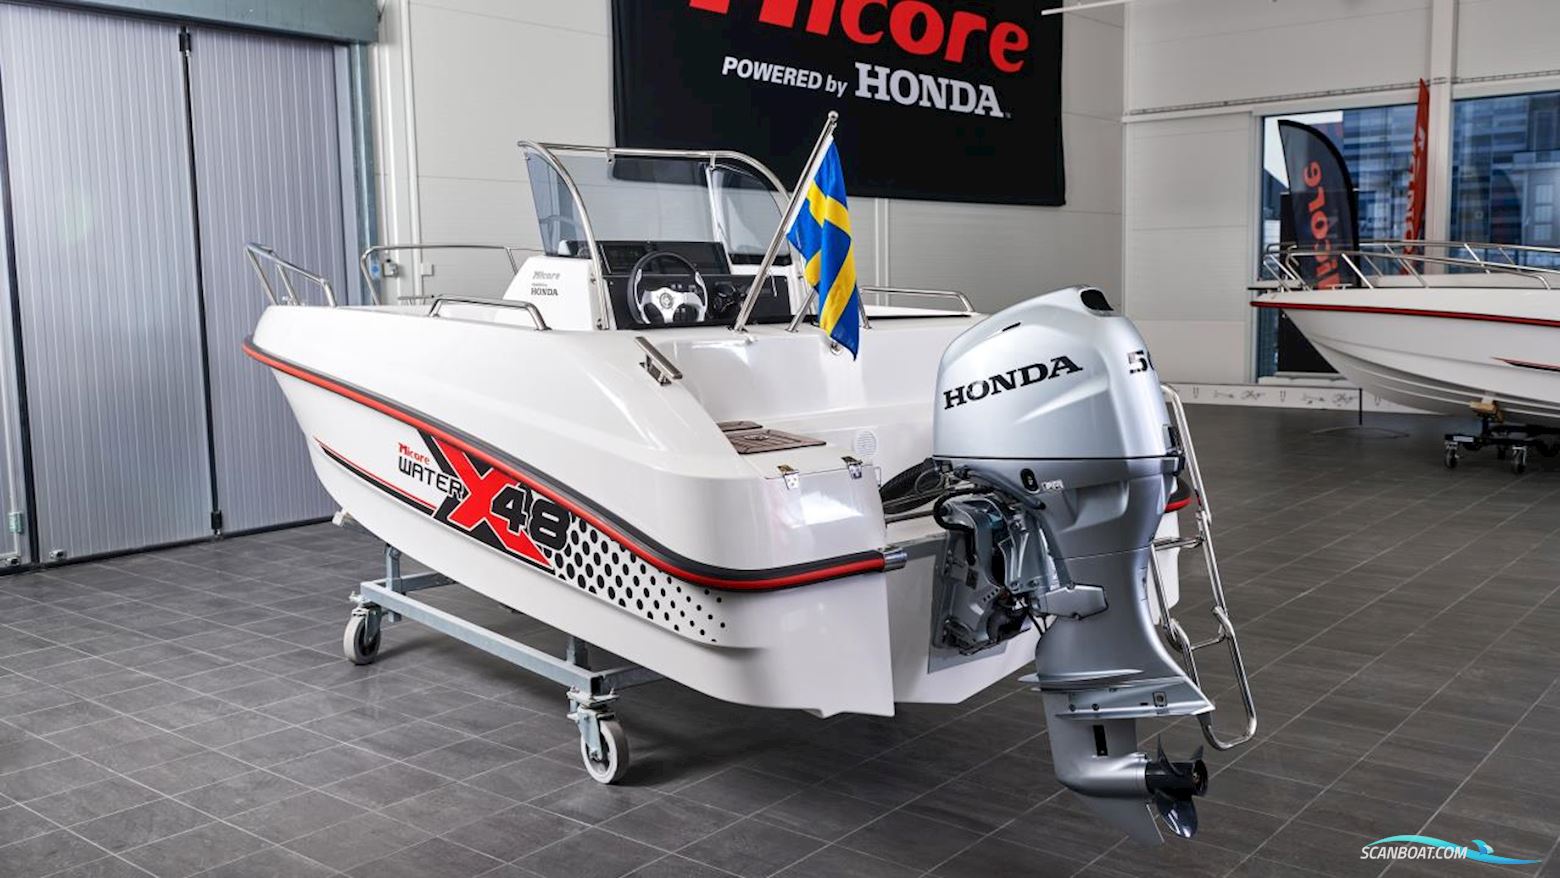 Micore Xw48sc Motorbåt 2022, med Honda motor, Sverige